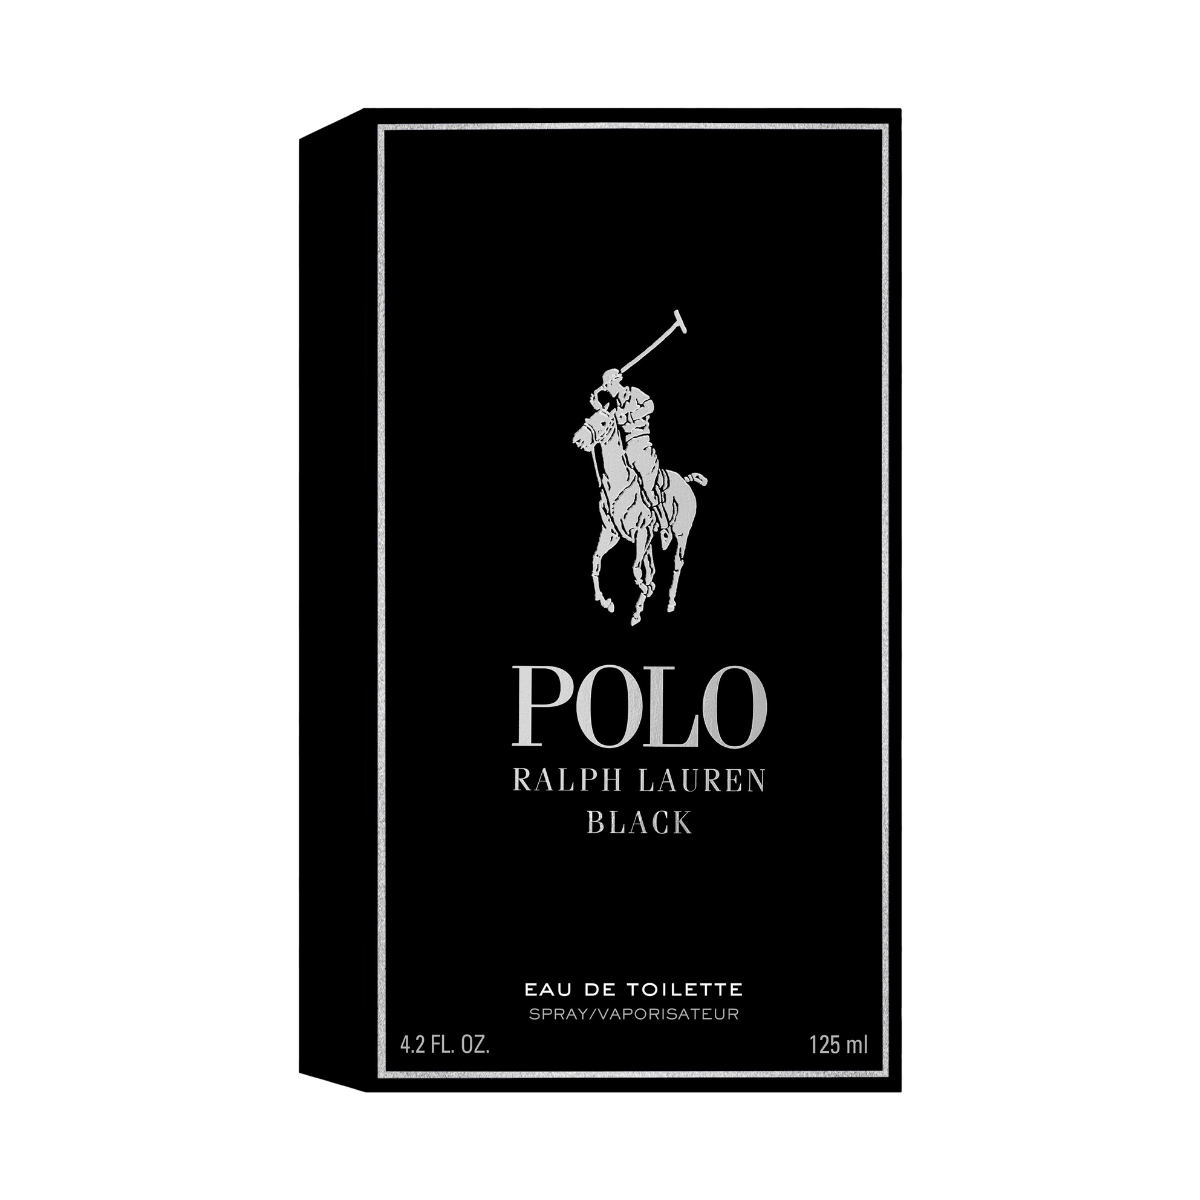 Polo Black Ralph Lauren Eau de Toilette